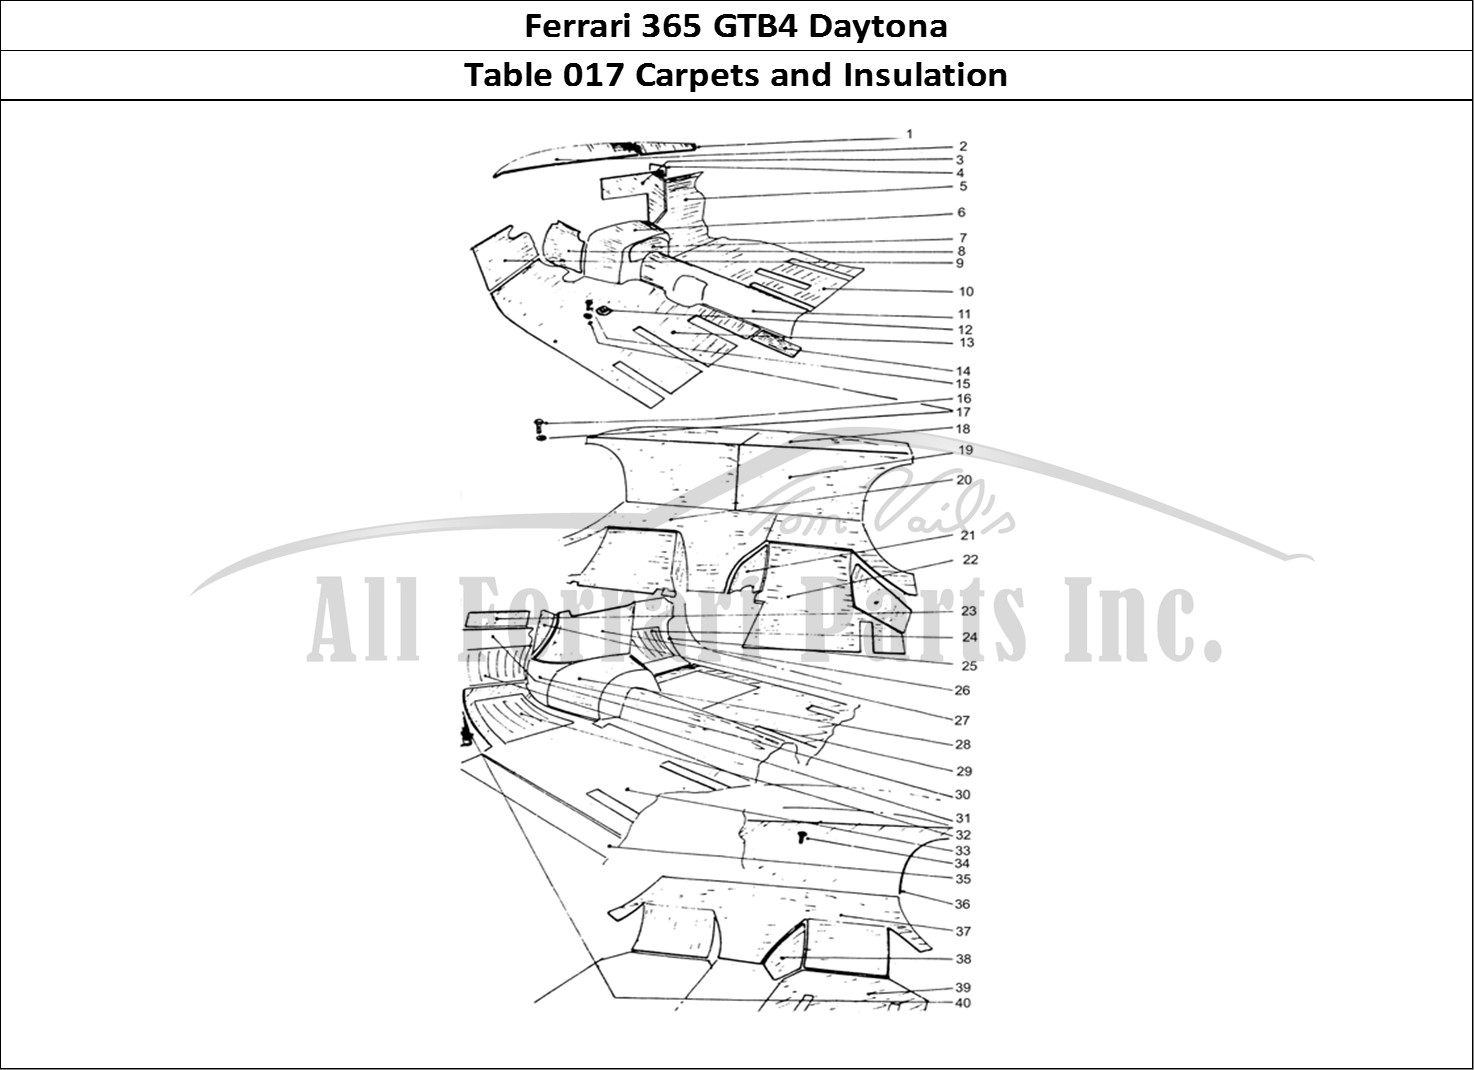 Ferrari Parts Ferrari 365 GTB4 Daytona (Coachwork) Page 017 Inner under felt & Carpet